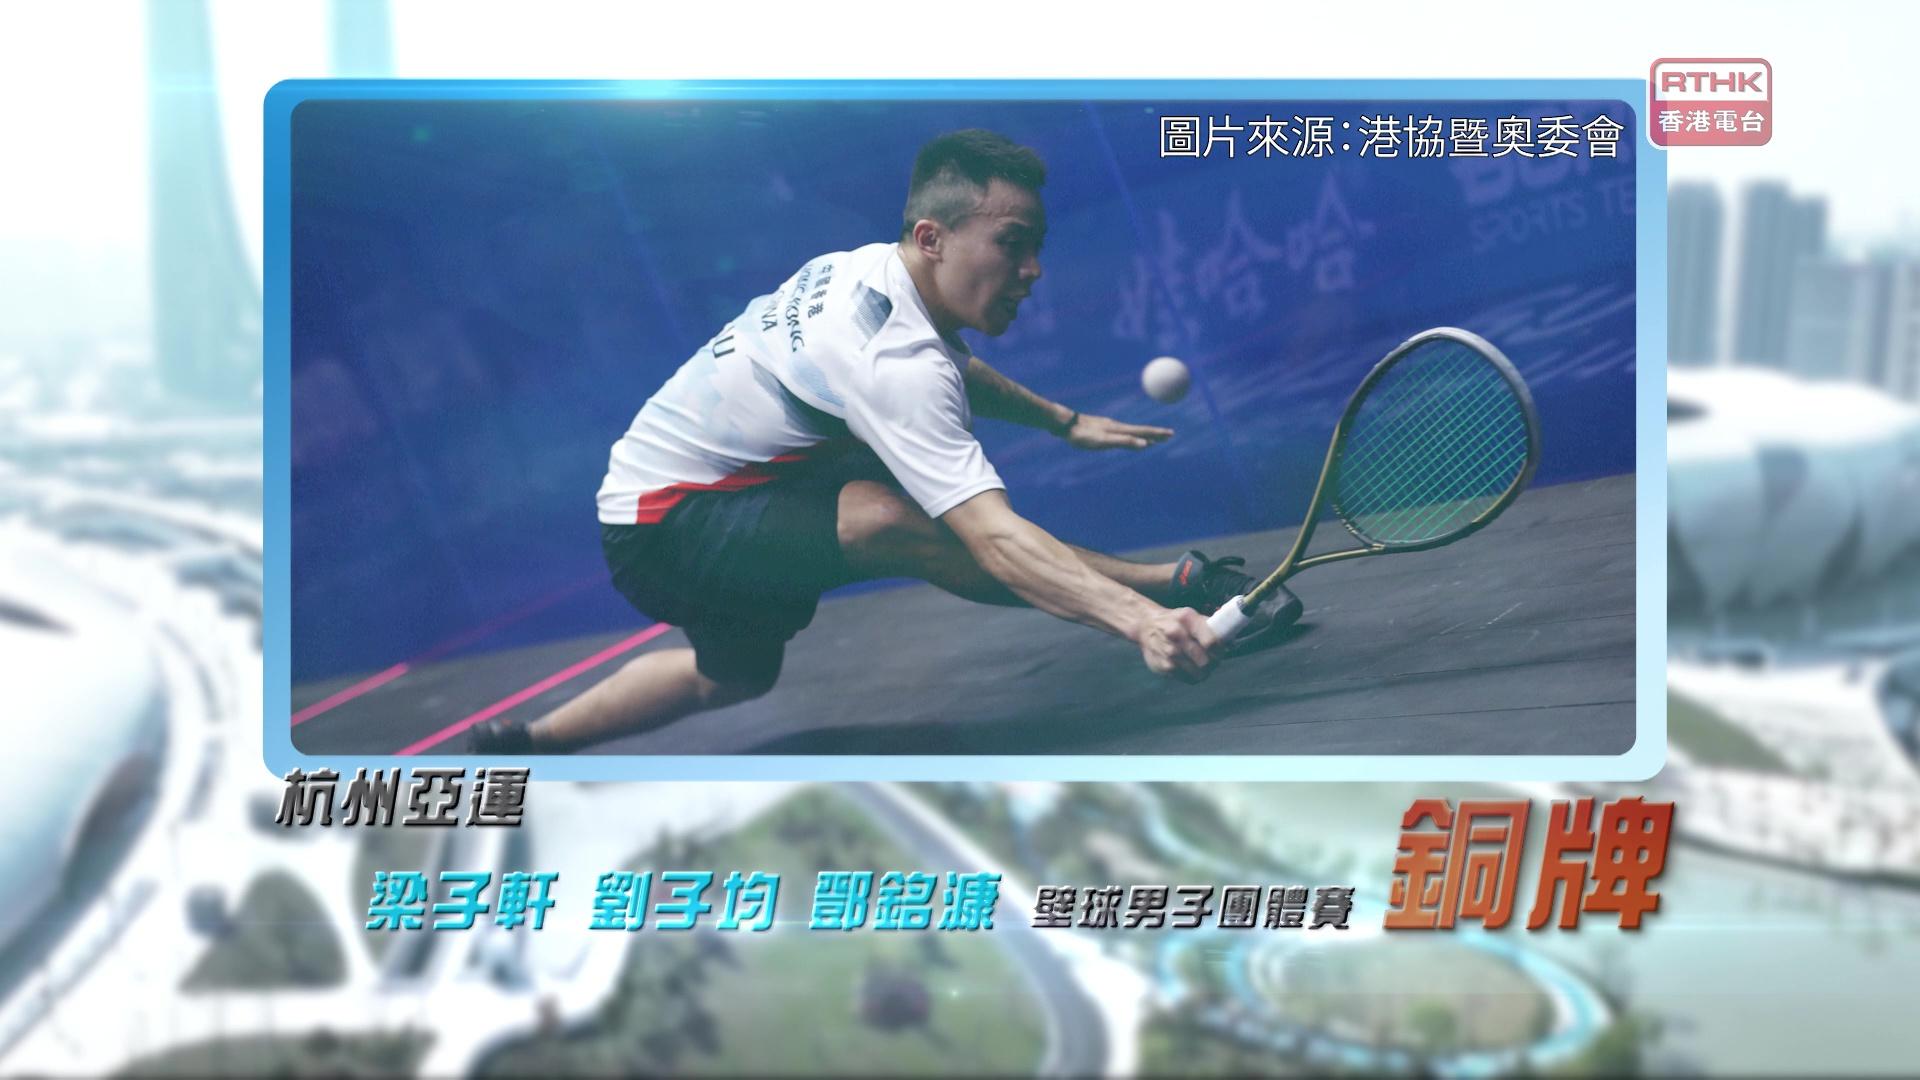 恭喜梁子轩、刘子均、邓铭漮于杭州亚运壁球男子团体赛取得铜牌！